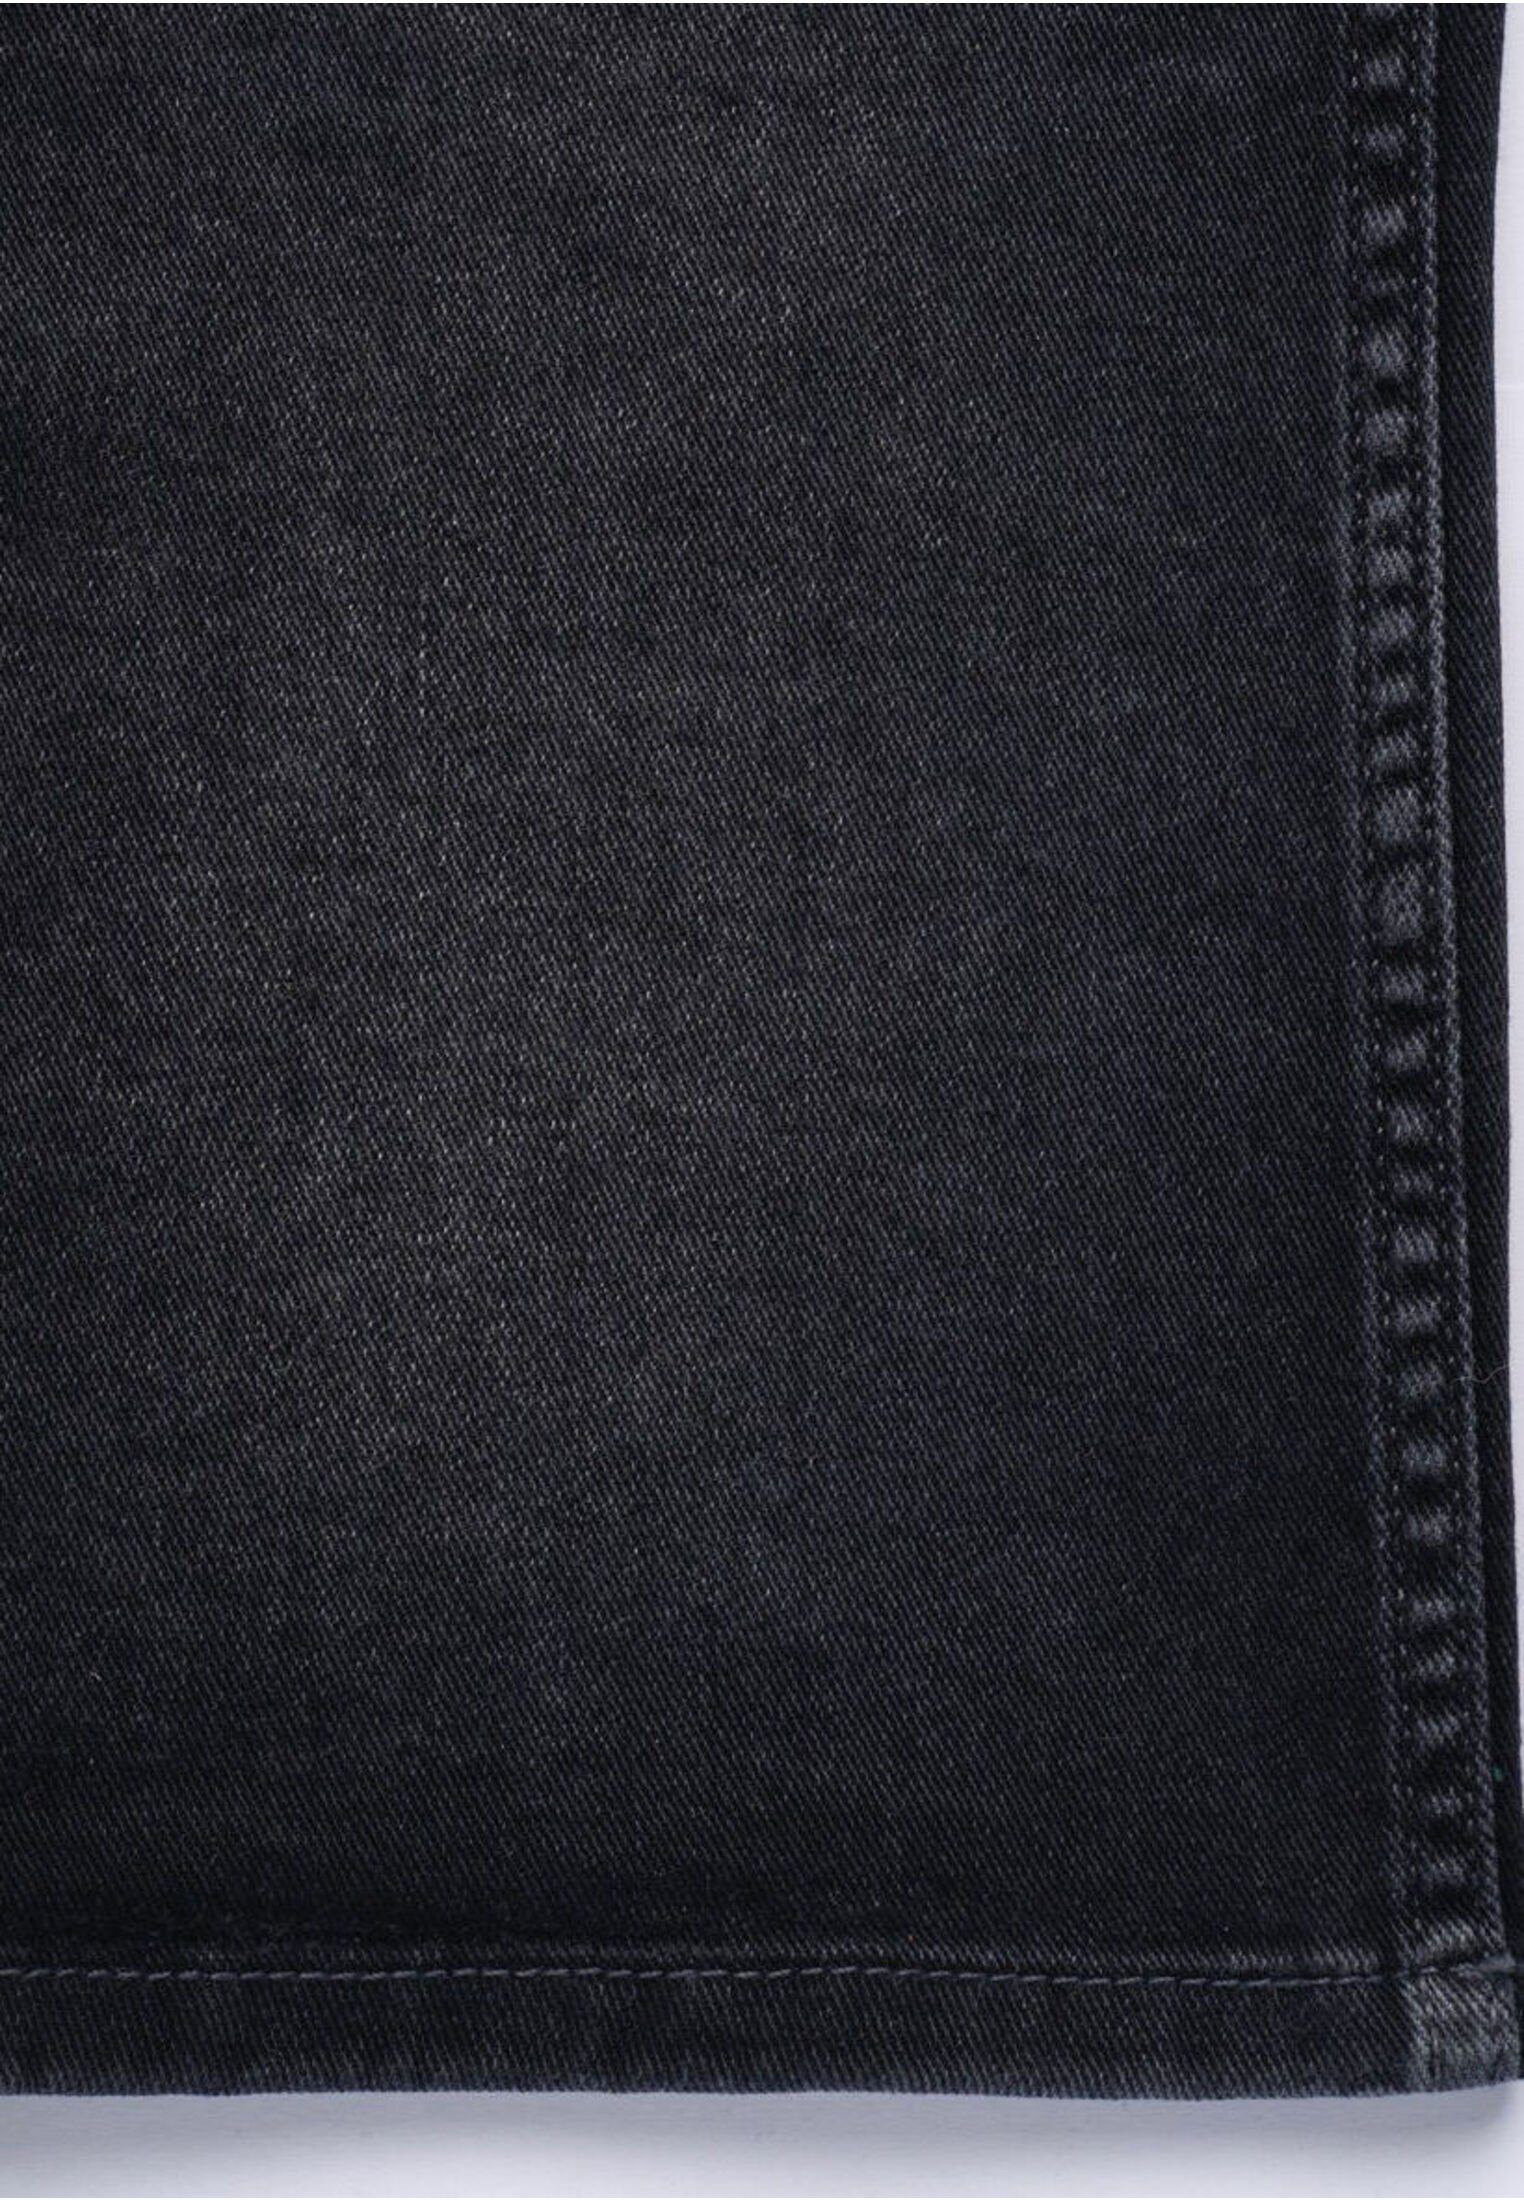 bugatti weicher Haptik mit dunkelgrau besonders 5-Pocket-Jeans